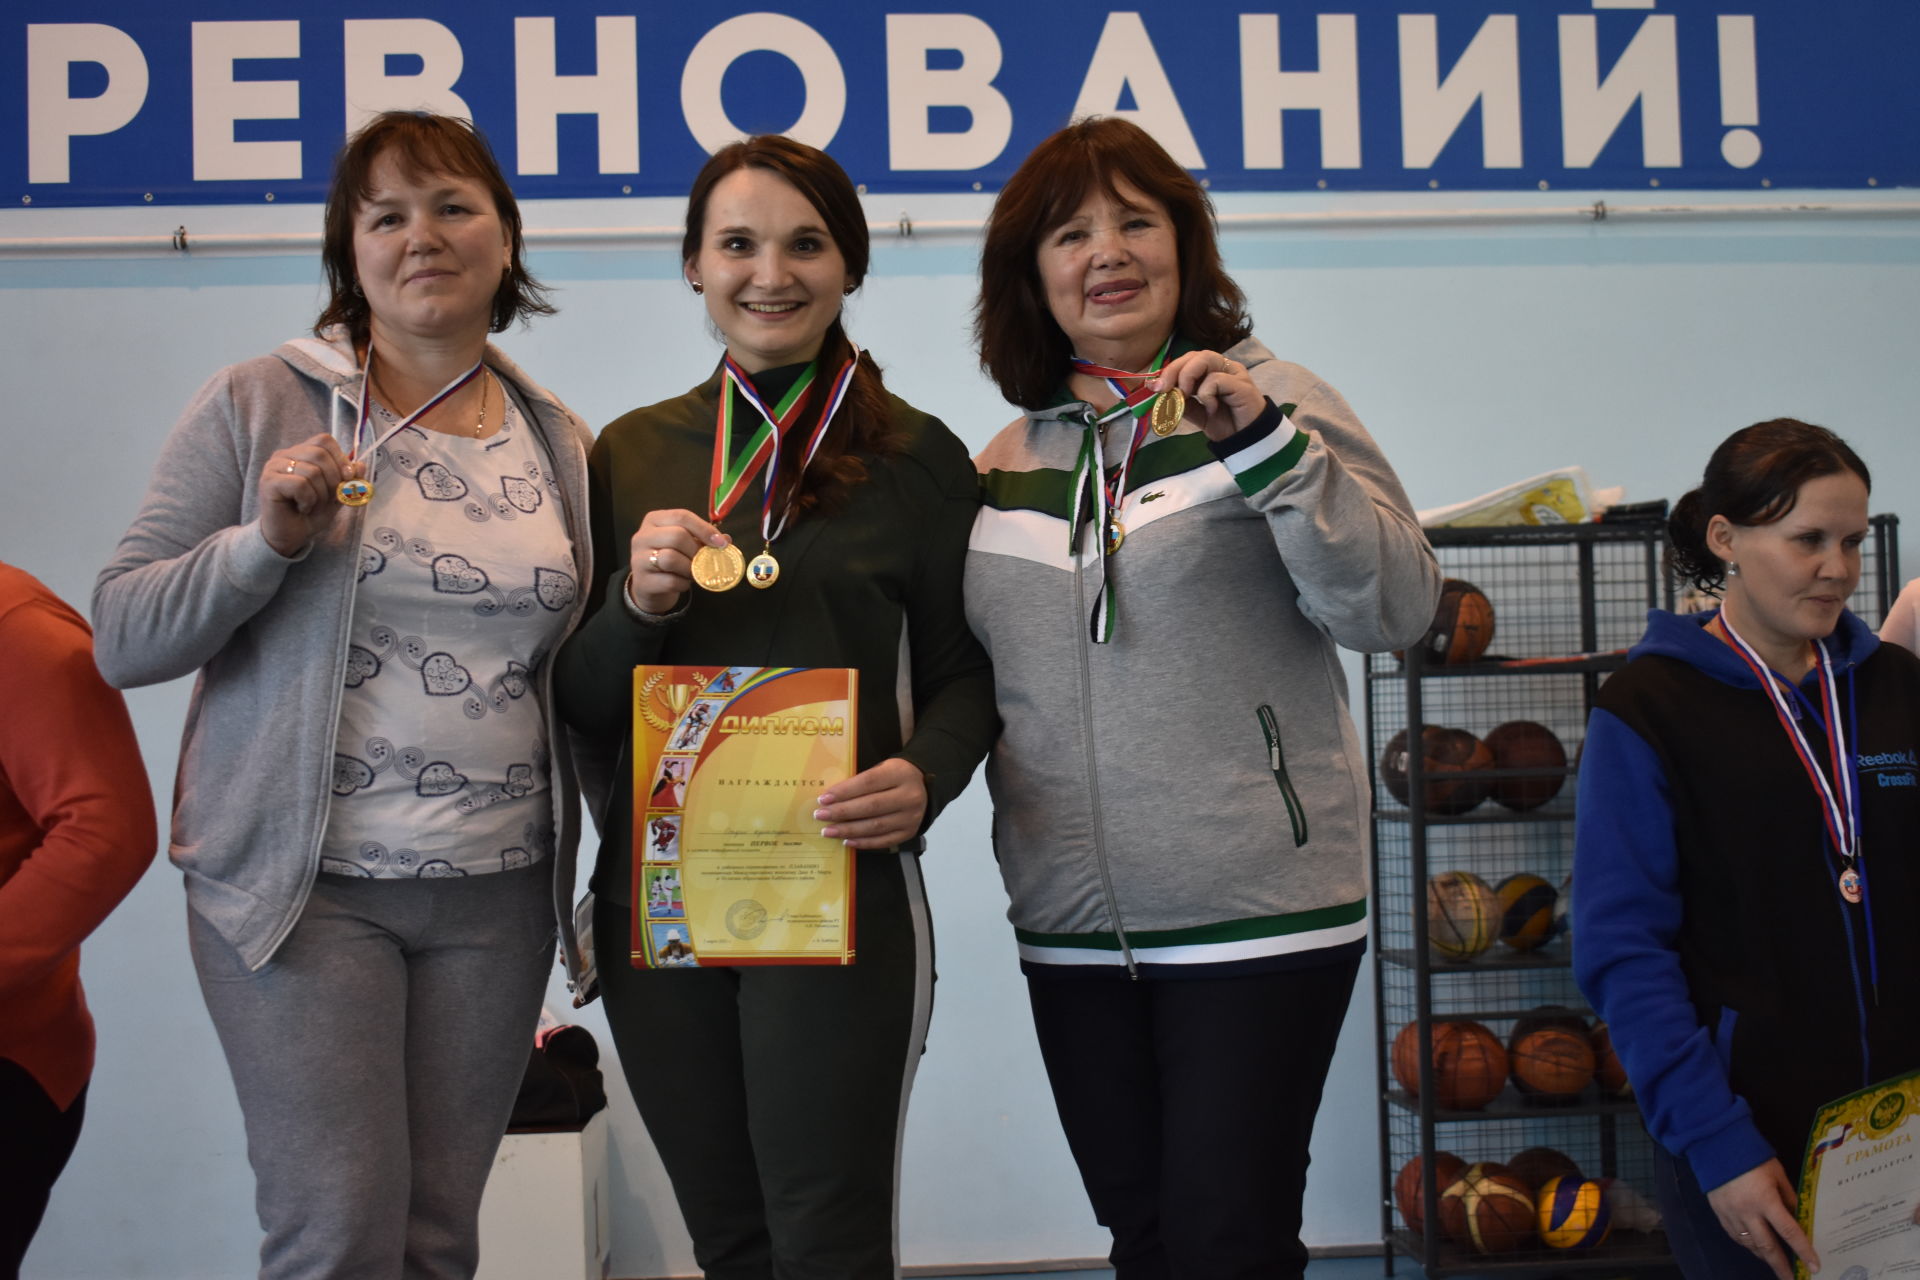 В Кайбицах состоялись соревнования по плаванию среди женщин